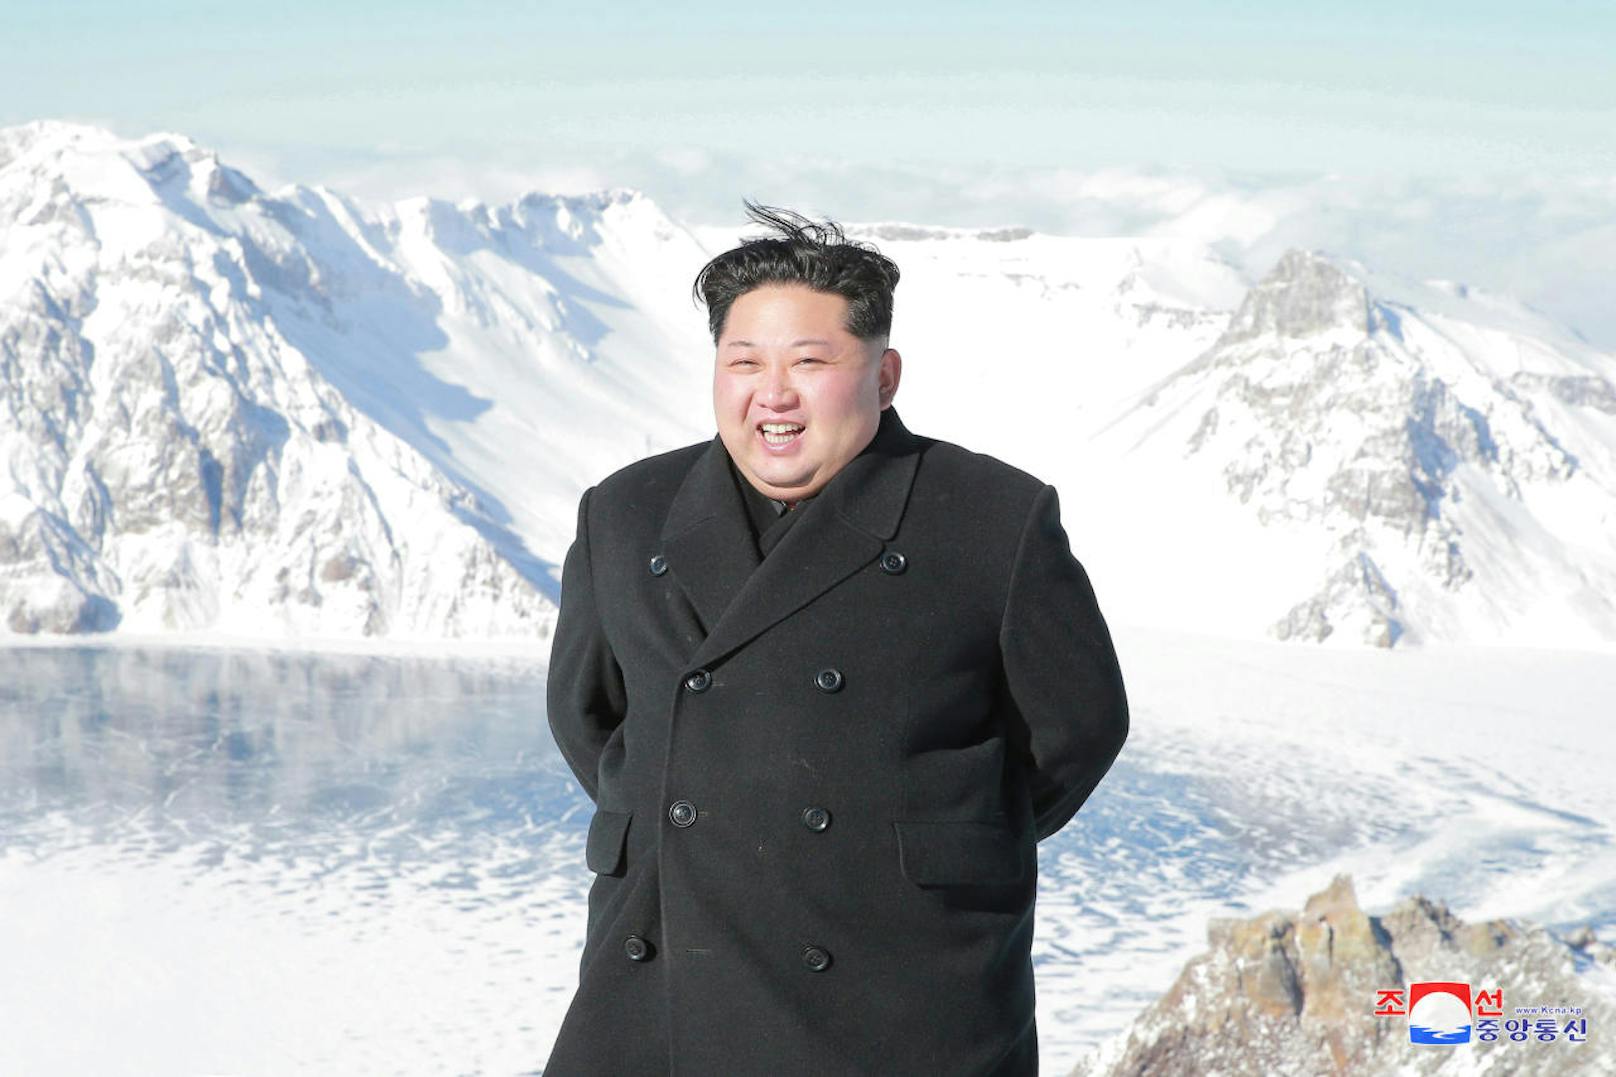 Das Kaiserwetter auf dem Gipfel soll übrigens auch alleine den Wettergott-gleichen Fähigkeiten des Diktators zu verdanken sein - so die nordkoreanische Staatspropaganda.